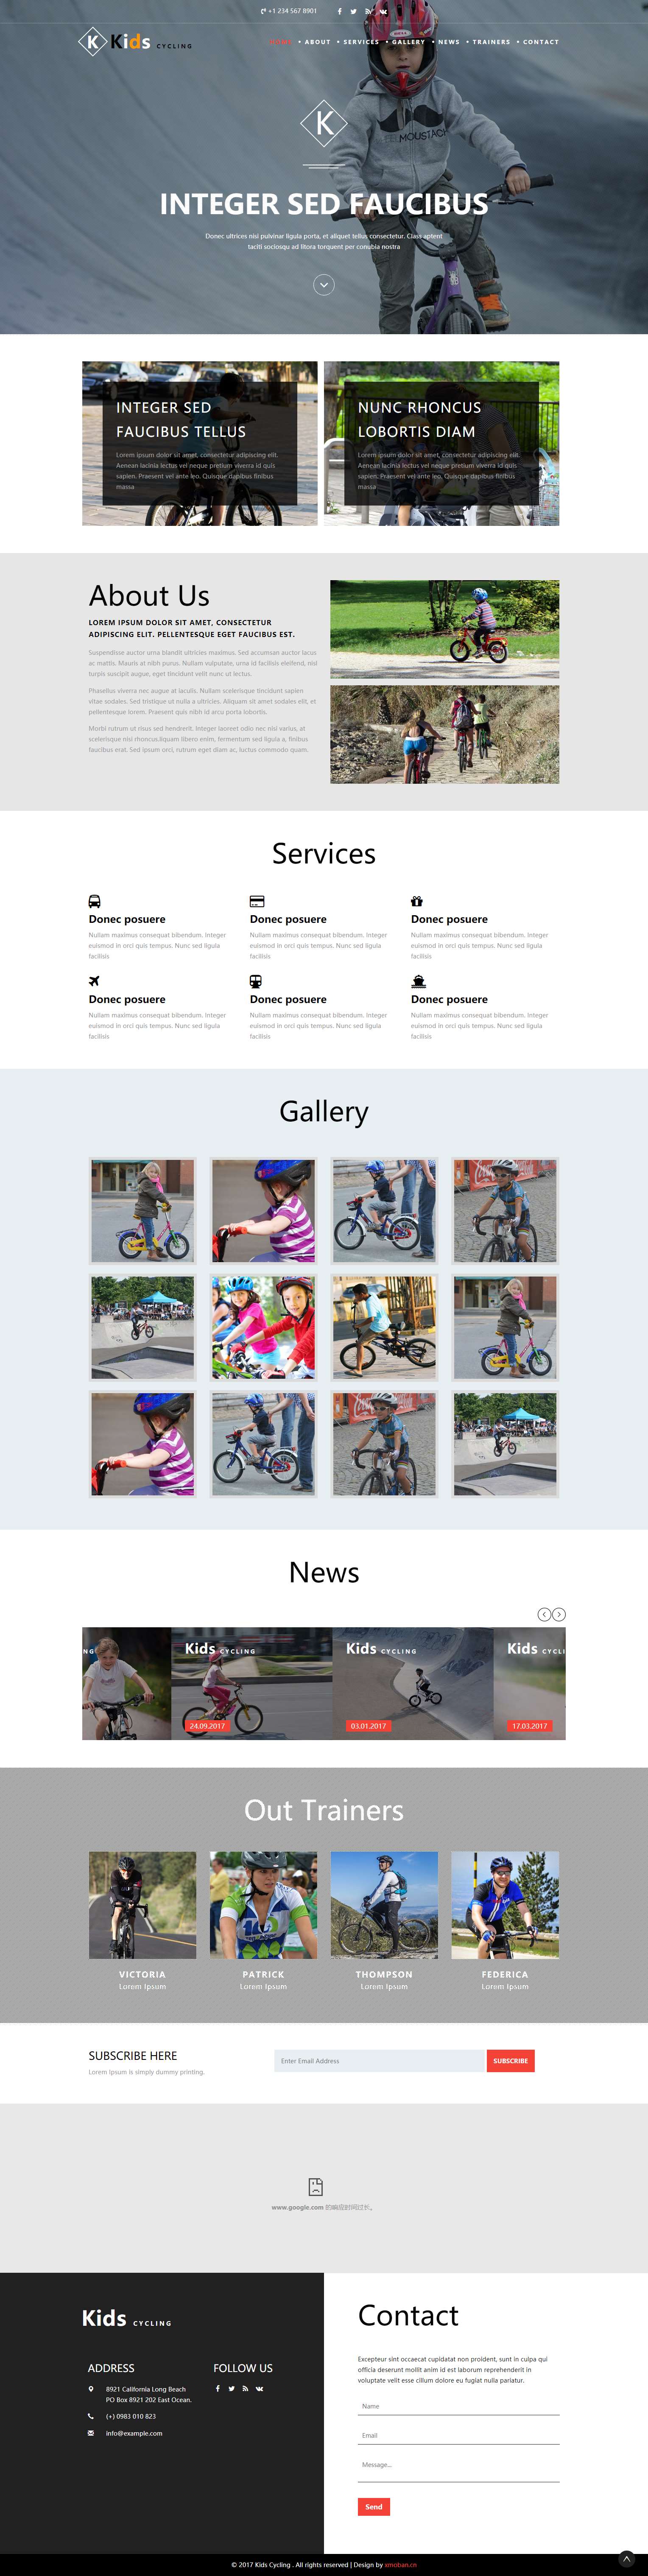 红色欧美风格的儿童自行车运动企业网站源码下载